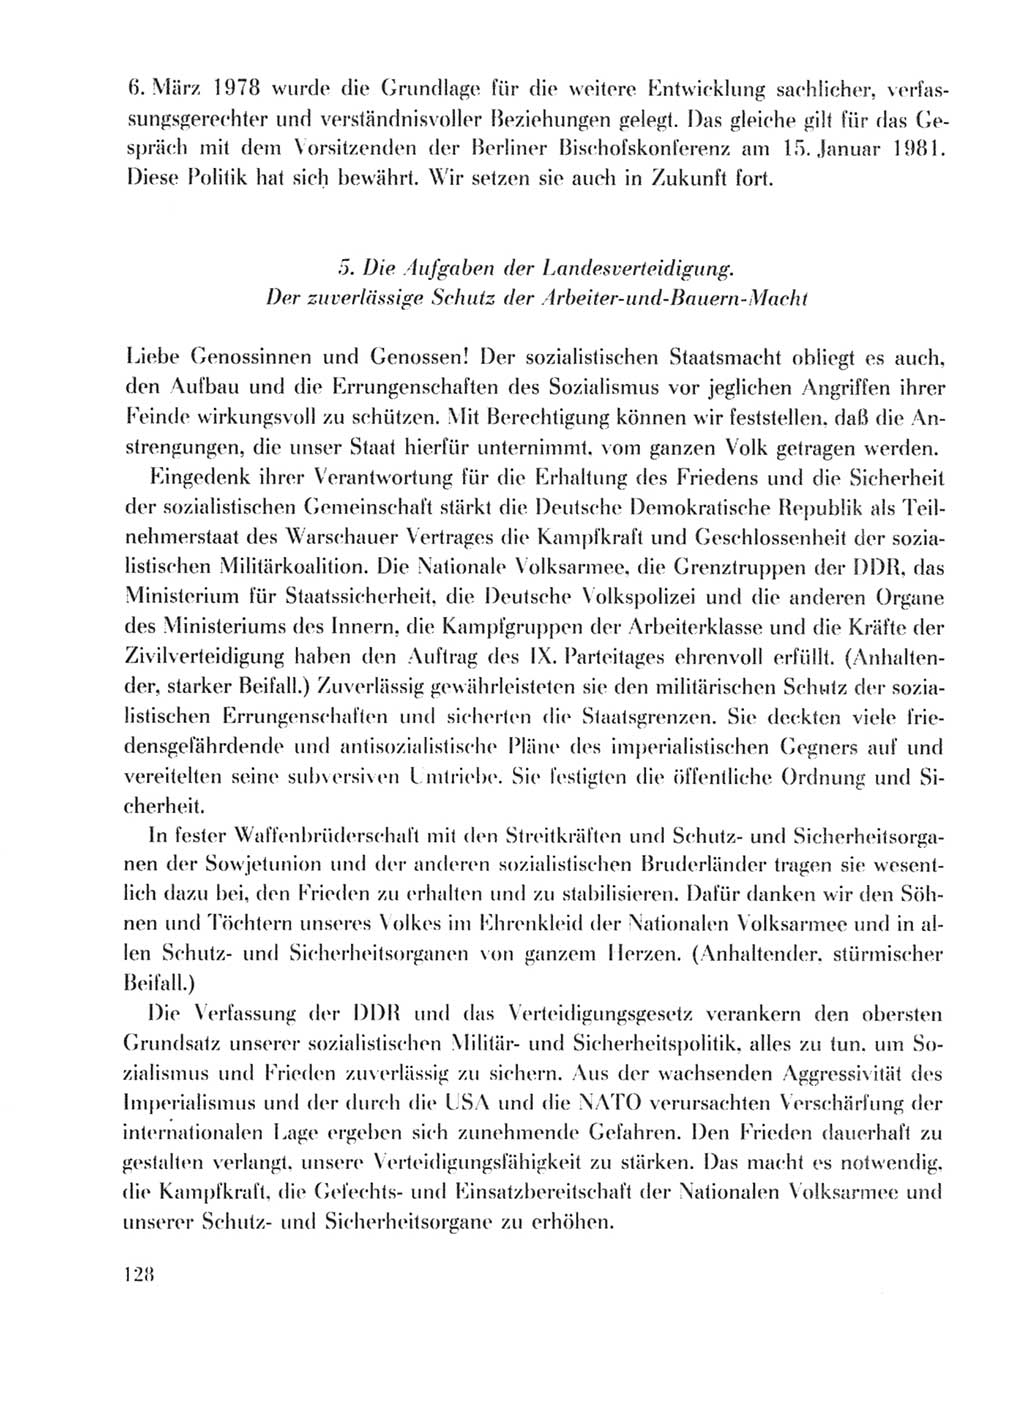 Protokoll der Verhandlungen des Ⅹ. Parteitages der Sozialistischen Einheitspartei Deutschlands (SED) [Deutsche Demokratische Republik (DDR)] 1981, Band 1, Seite 128 (Prot. Verh. Ⅹ. PT SED DDR 1981, Bd. 1, S. 128)